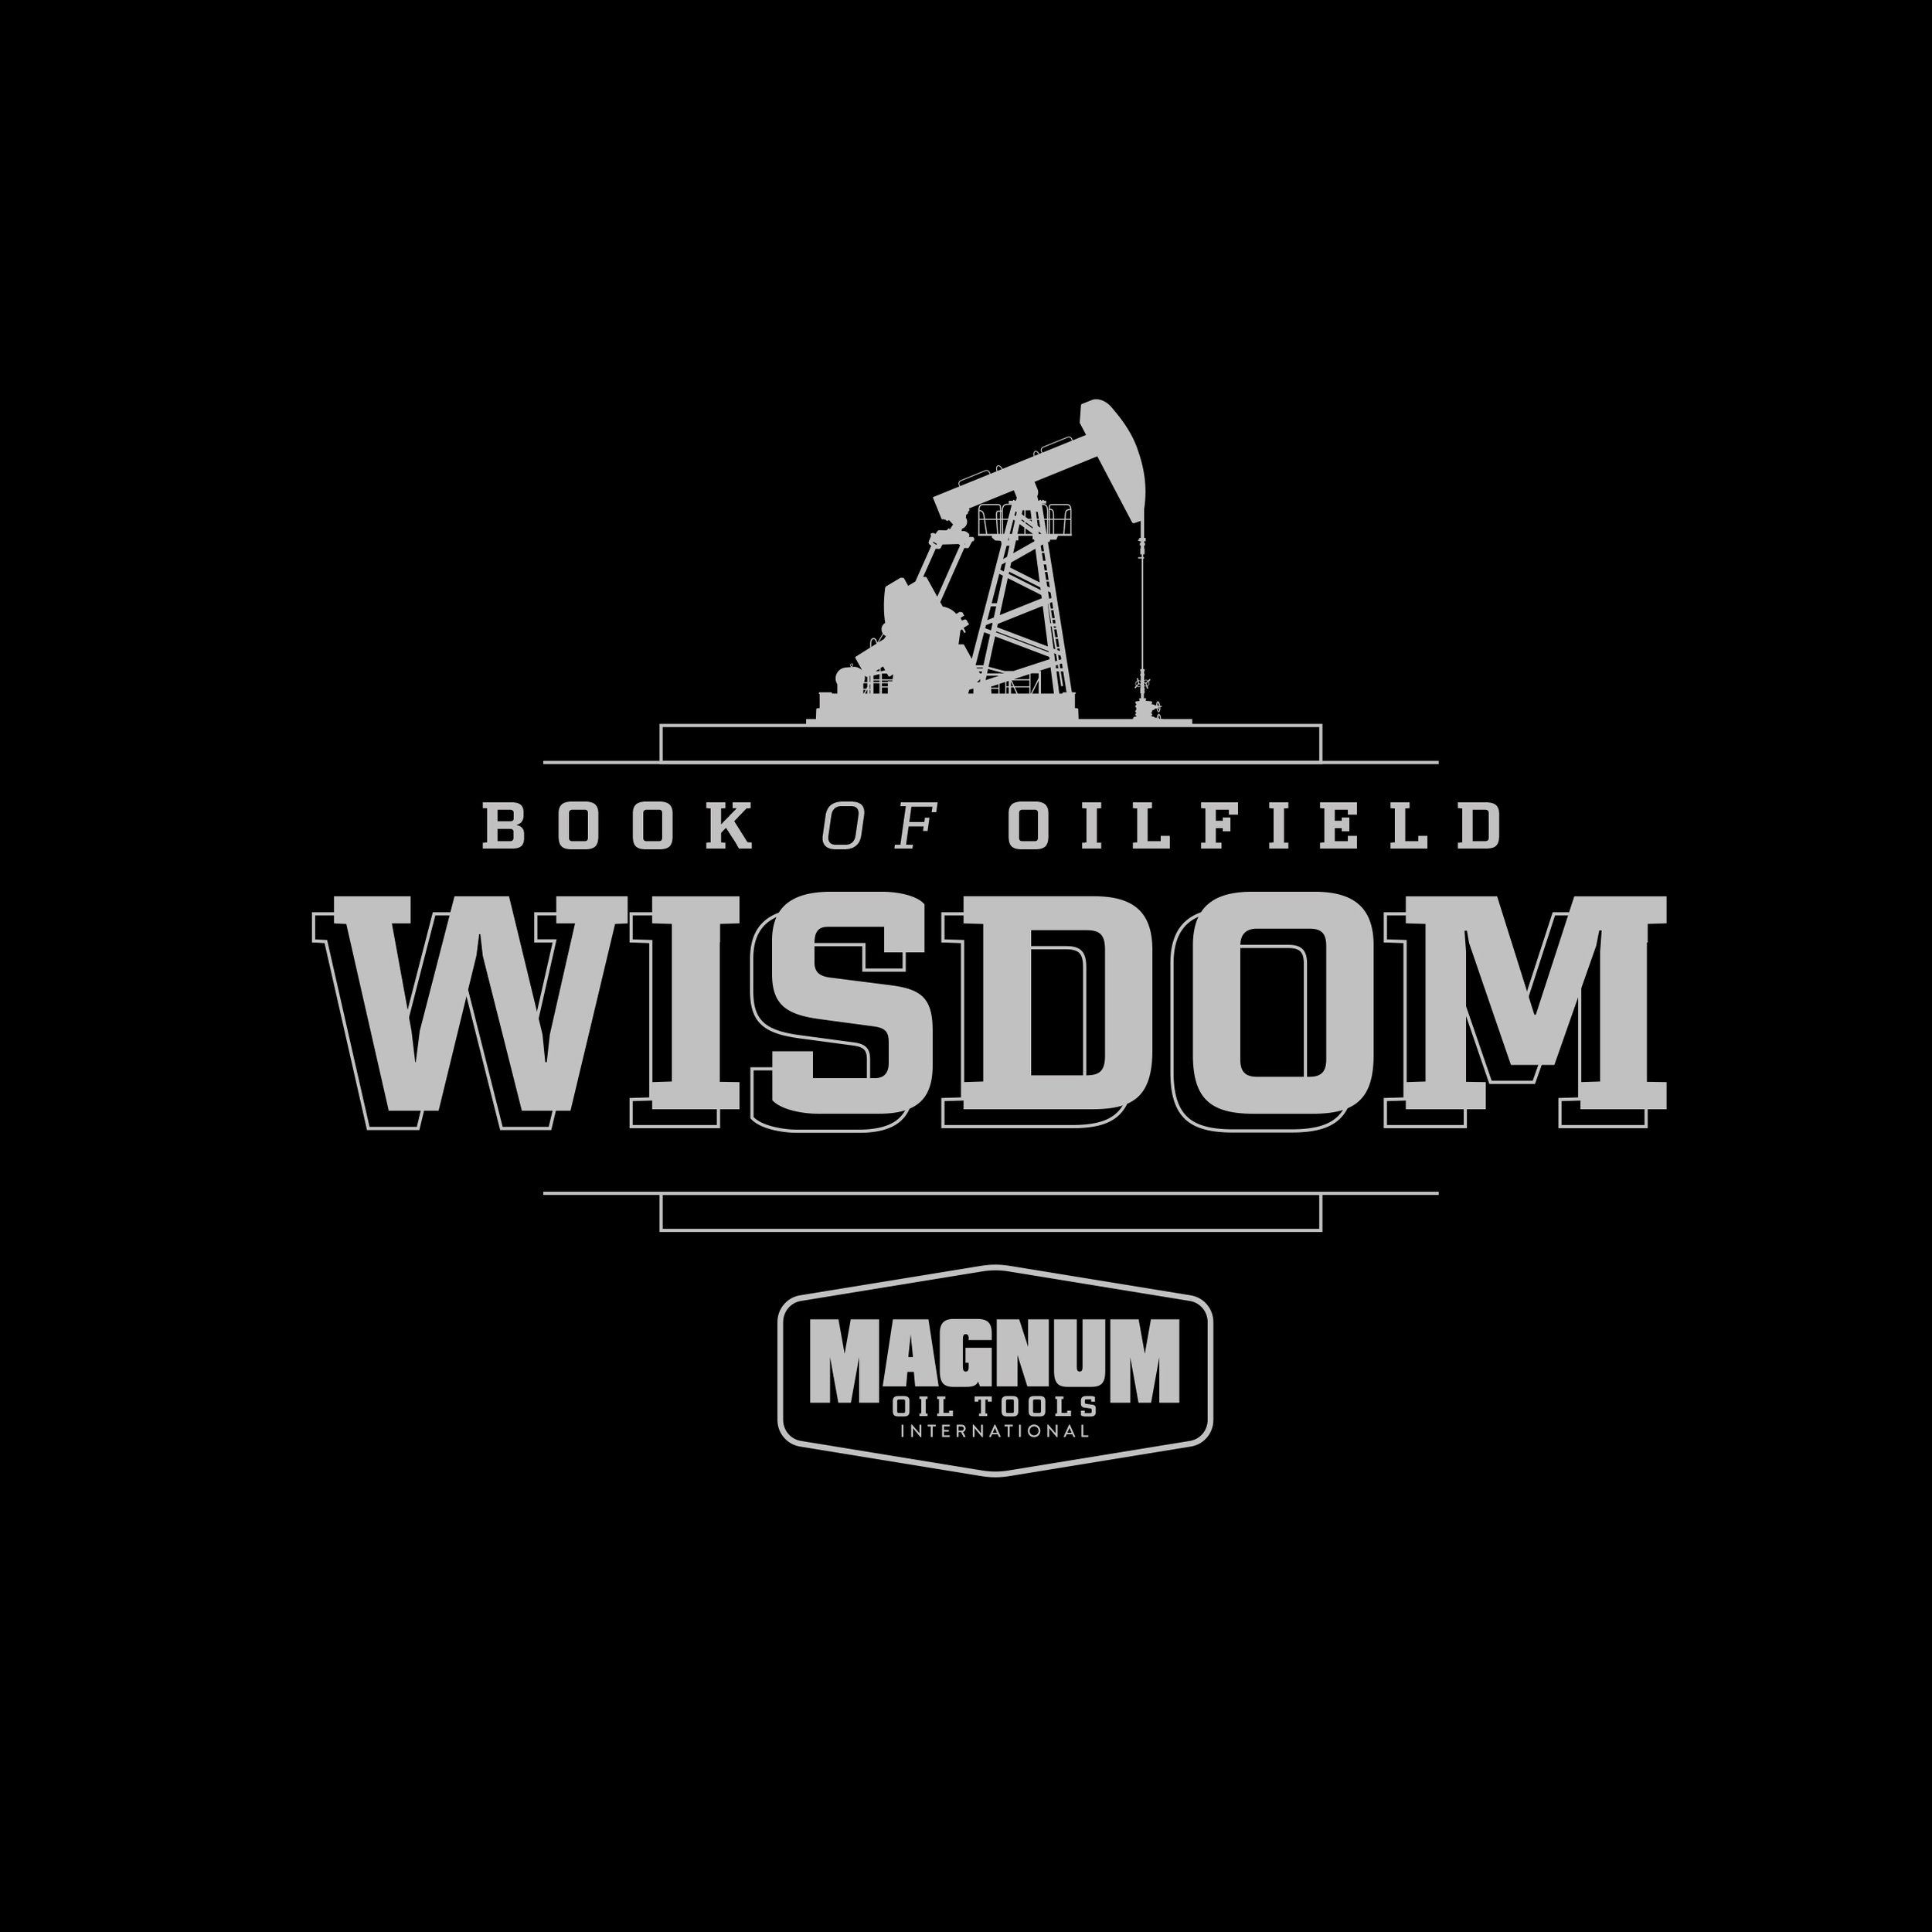 Magnum_Wisdom_Cover_cv_v01-2.jpg